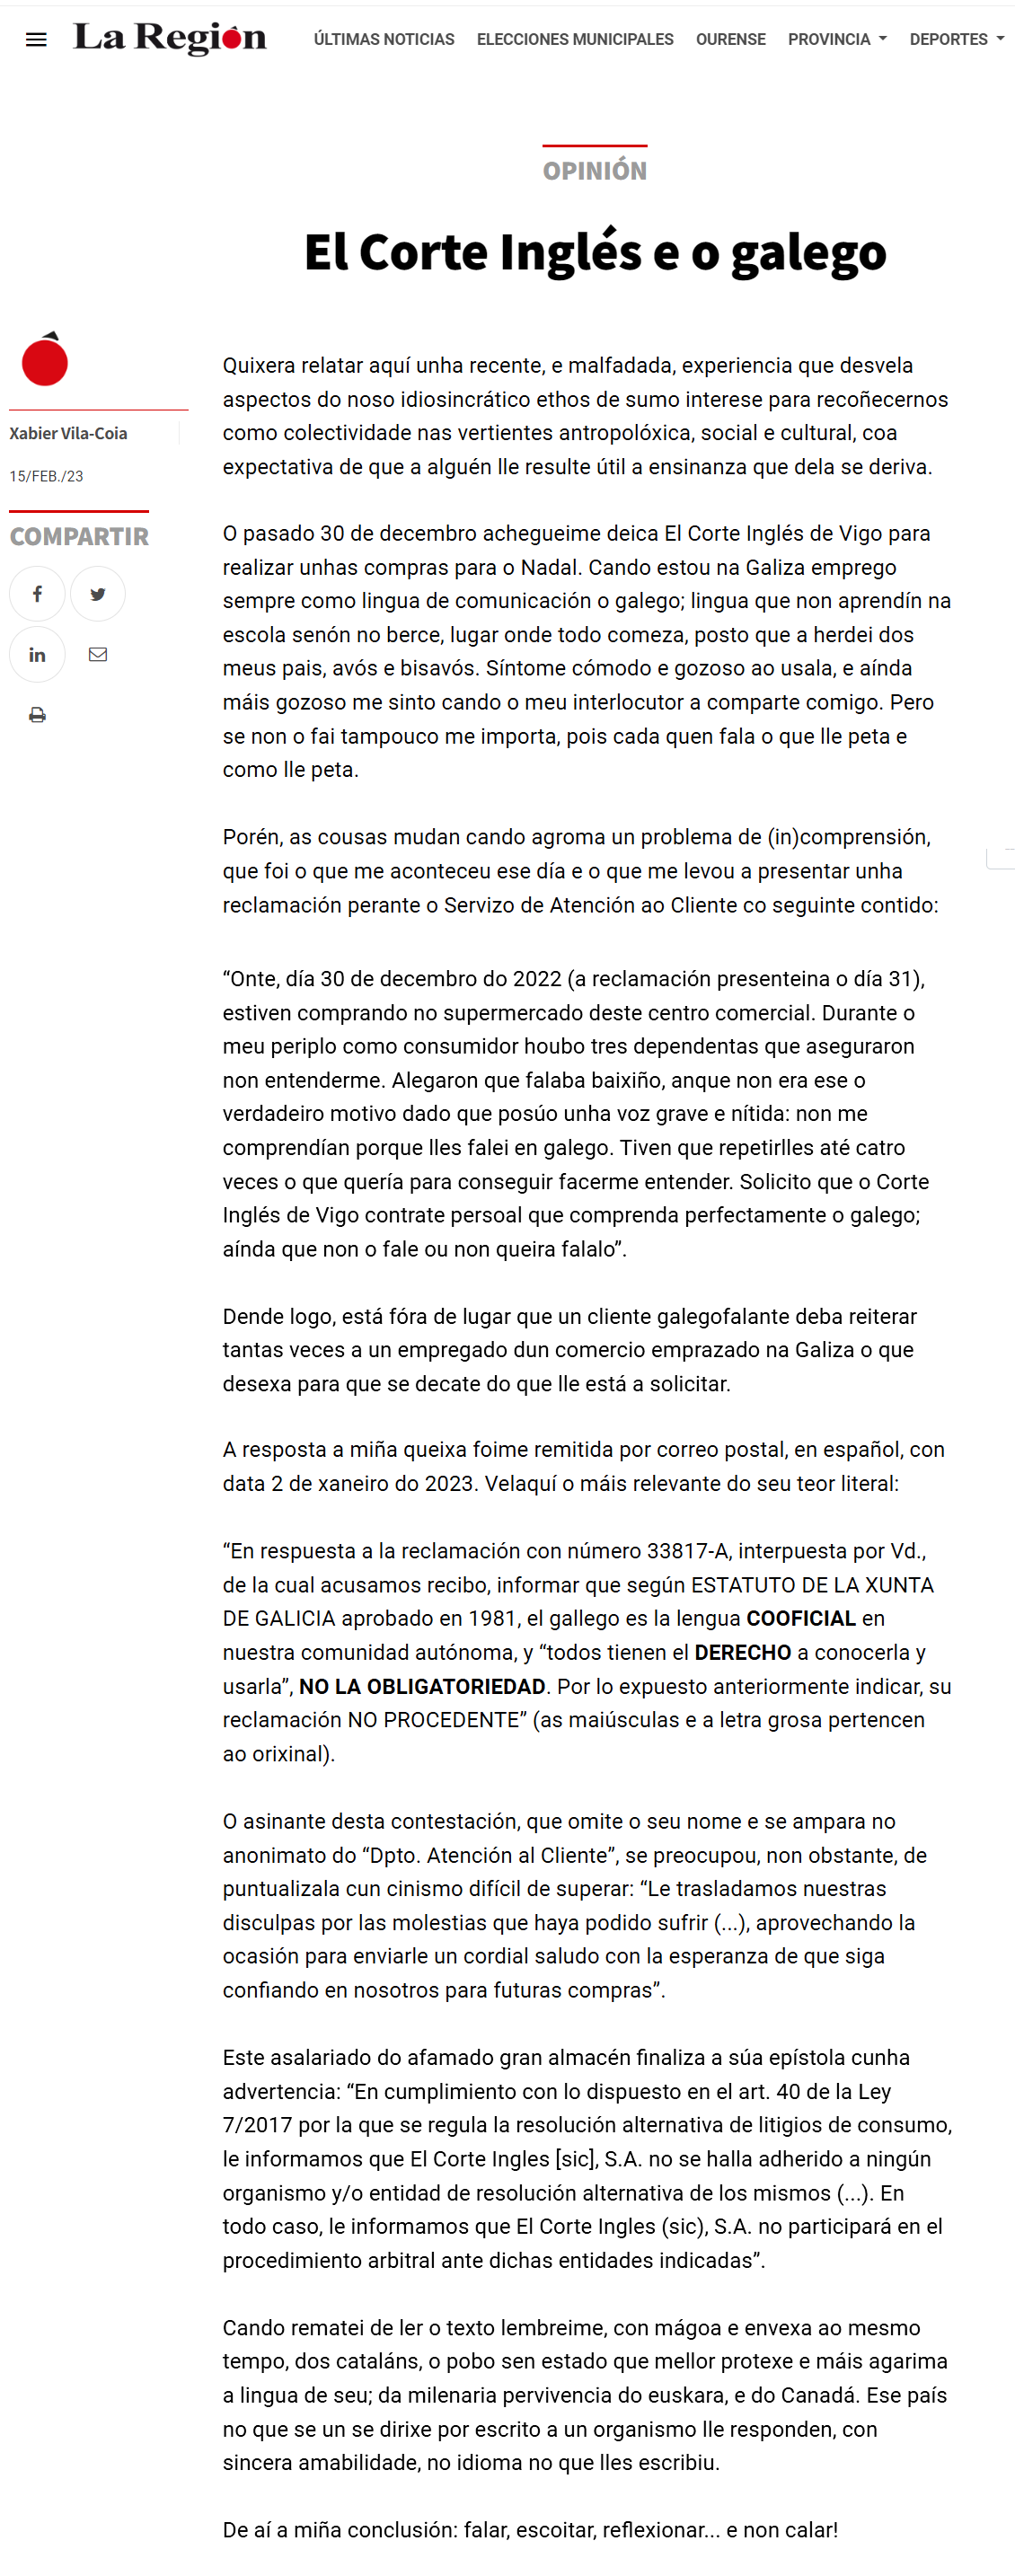 Artigo de Xabier Vila-Coia titulado "El Corte Inglés e o galego", publicado nos xornais Atlántico Diario, La Región e Galicia Confidencial no mes de febreiro do 2023.